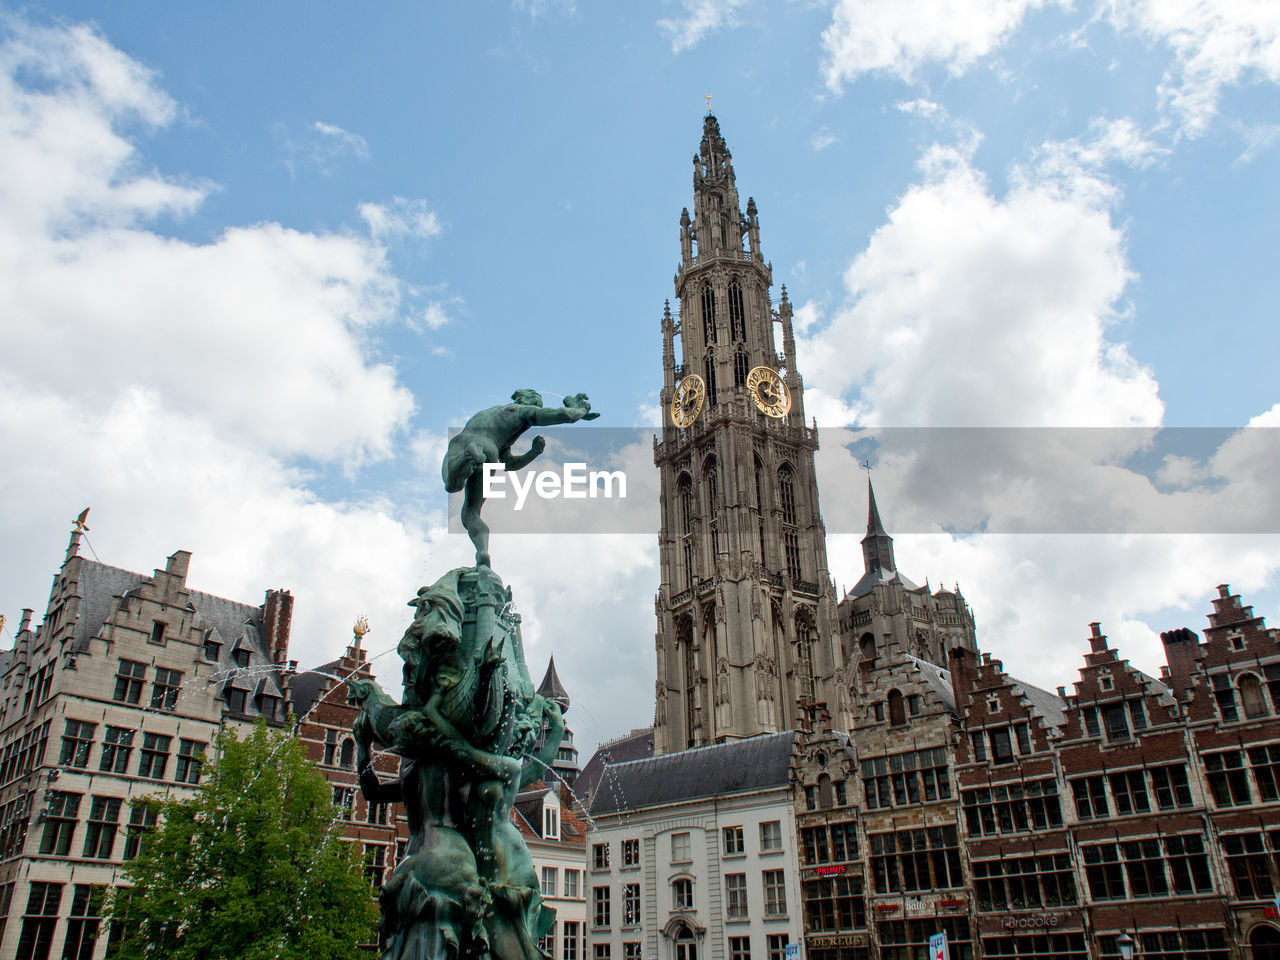 Antwerp in belgium